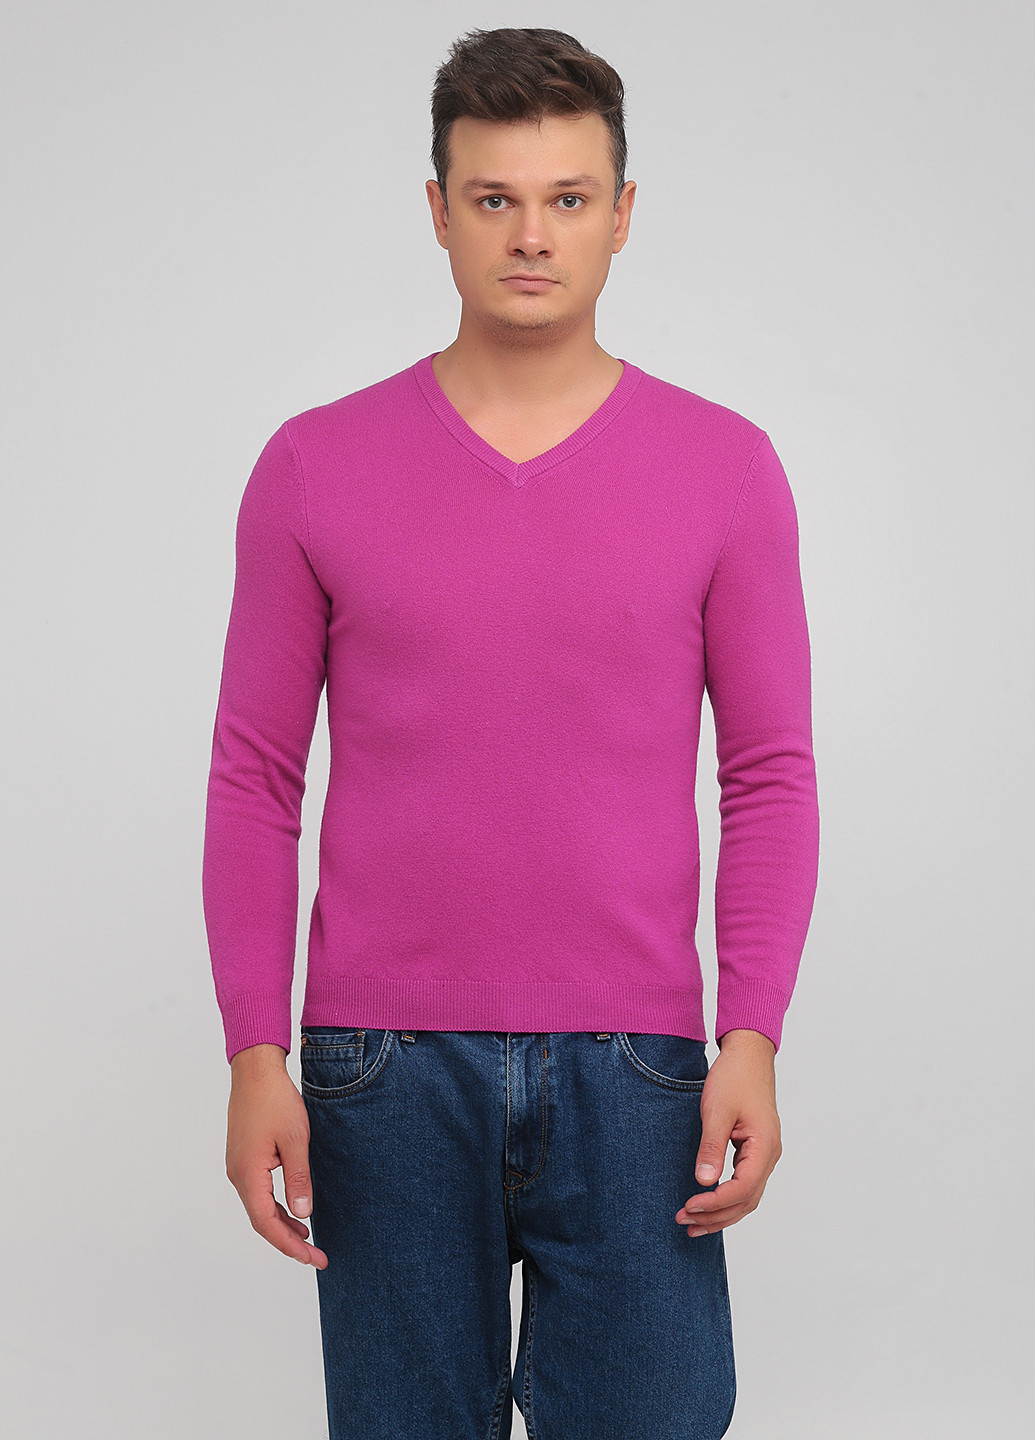 Фуксиновый демисезонный пуловер пуловер United Colors of Benetton